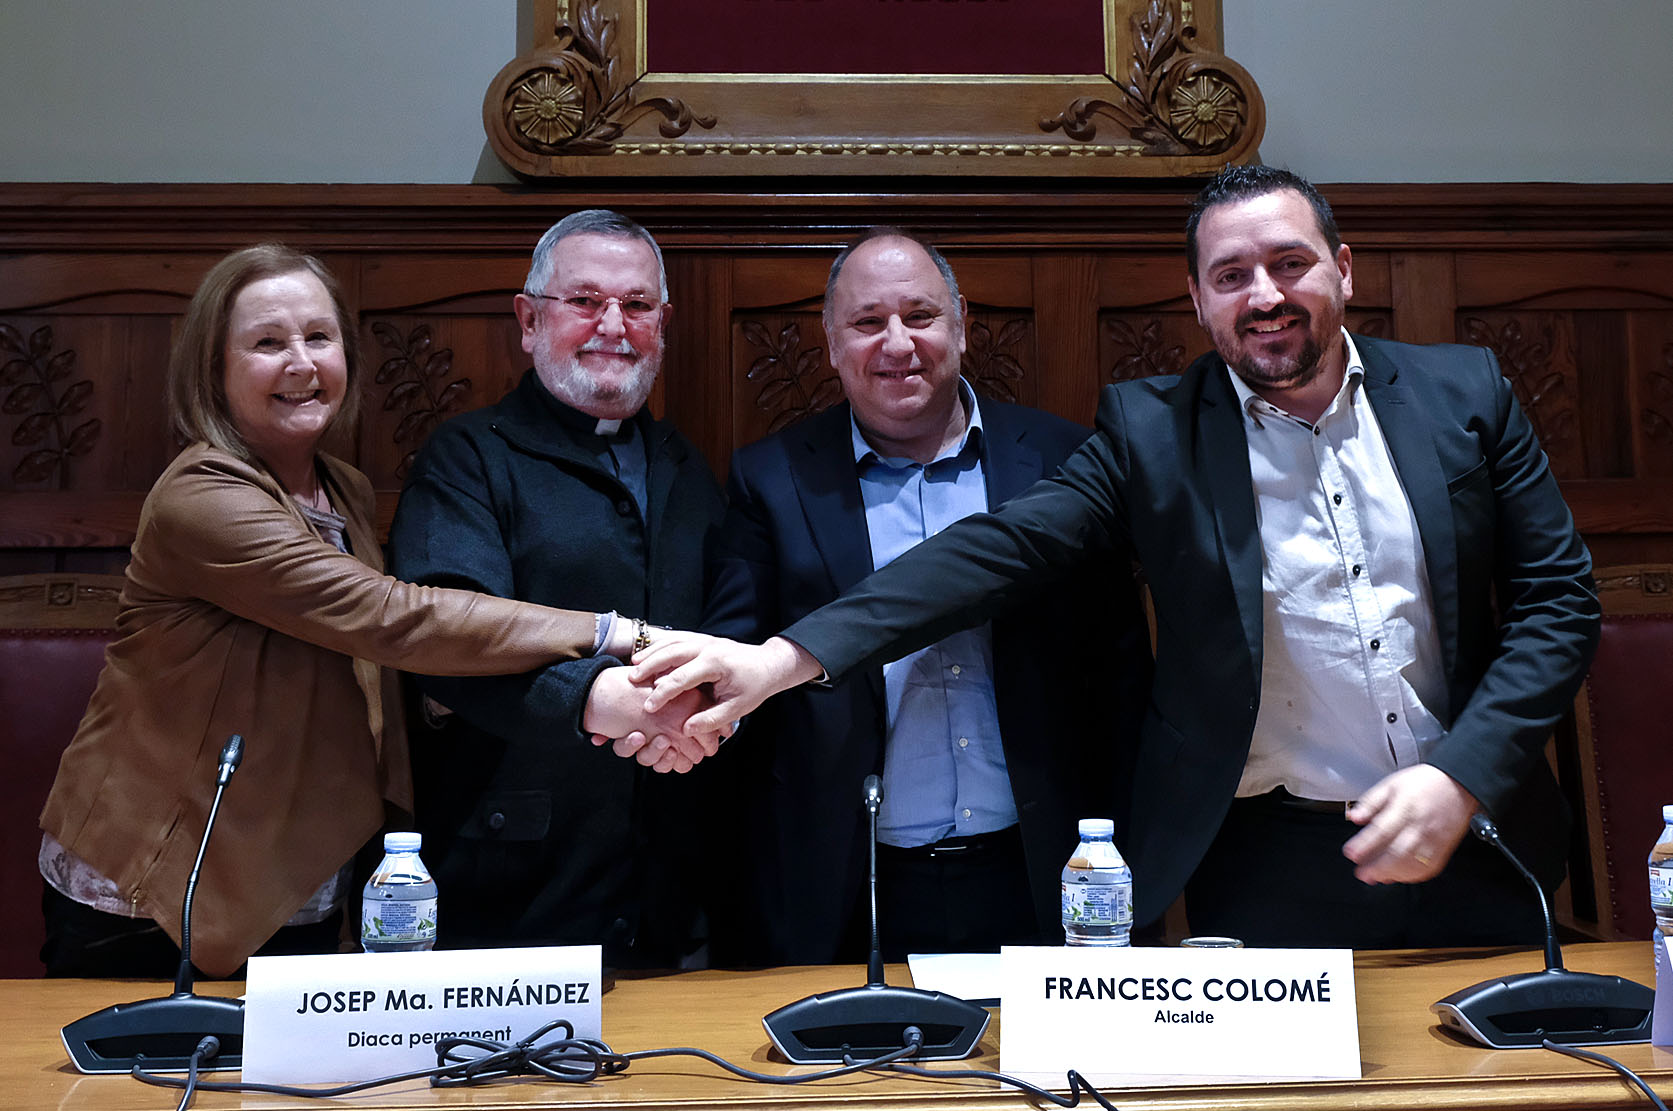 L'alcalde, Francesc Colomé, i Mossèn Josep Maria Fernández, al centre, amb els regidors Rosa Pruna, Juan Antonio Corchado, en la firma de l'acord, aquest dijous